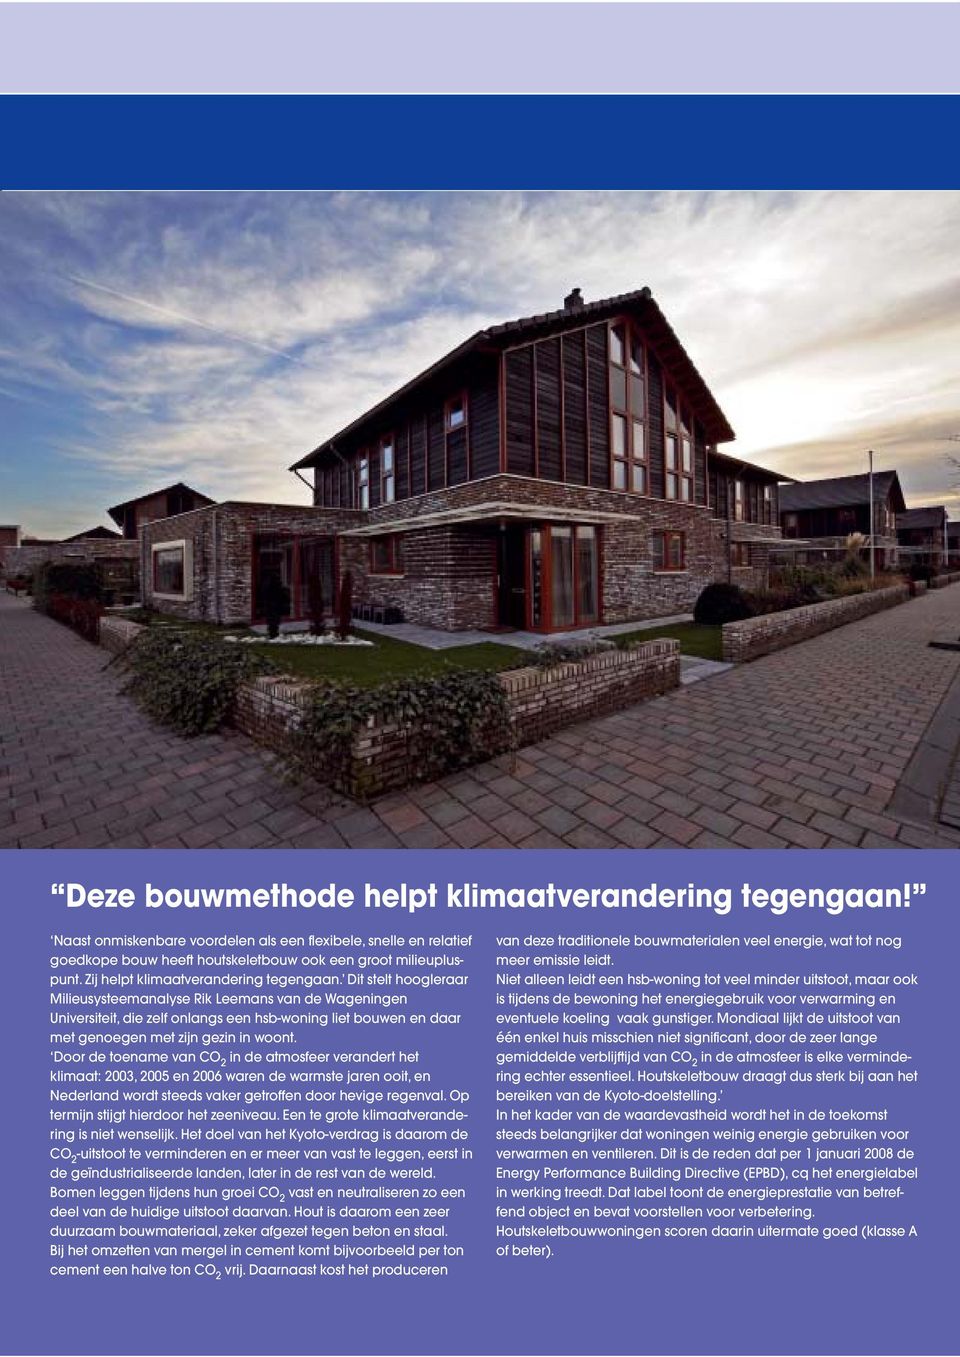 Dit stelt hoogleraar Milieusysteemanalyse Rik Leemans van de Wageningen Universiteit, die zelf onlangs een hsb-woning liet bouwen en daar met genoegen met zijn gezin in woont.